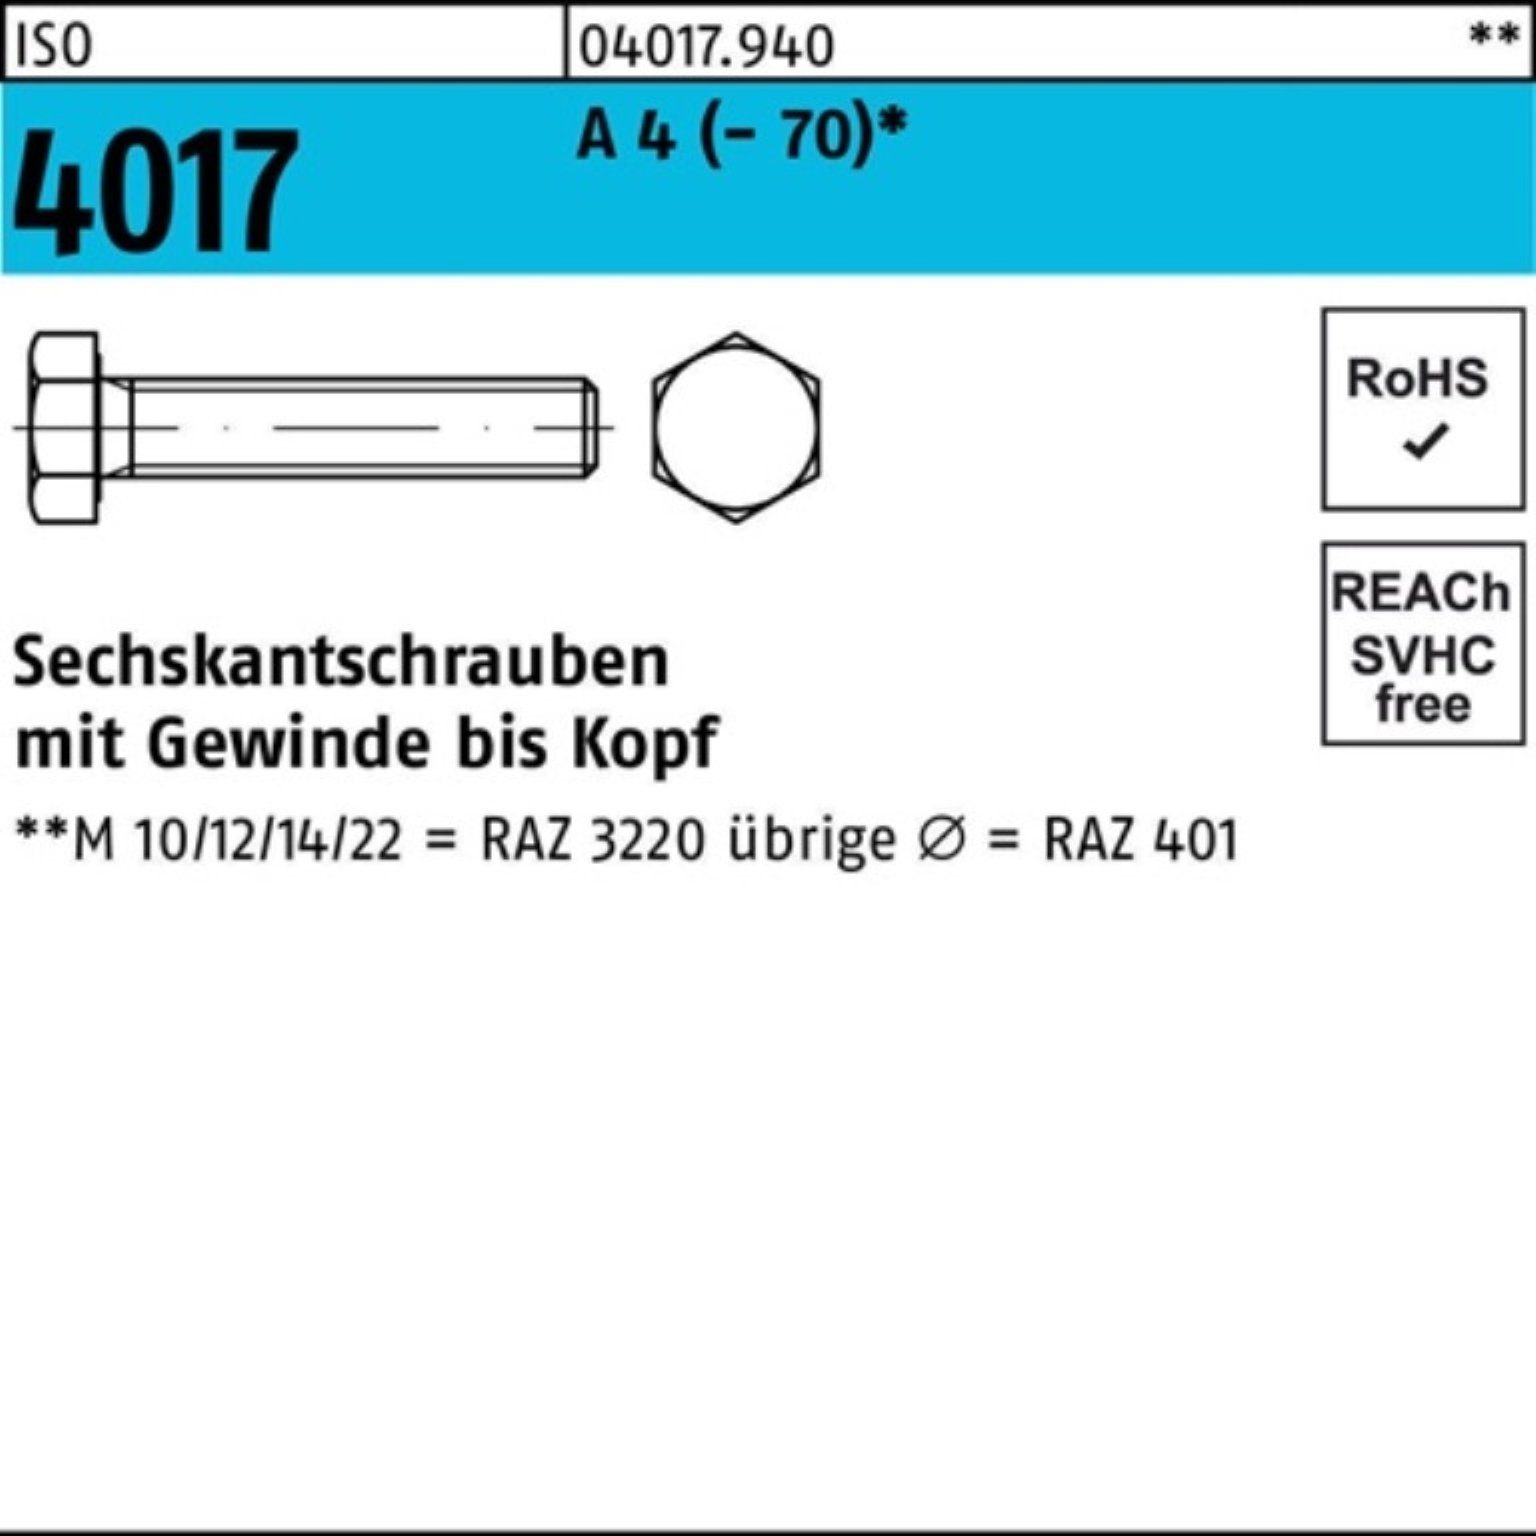 Bufab Sechskantschraube 4 VG Stück ISO ISO 110 A M36x 1 4017 401 Pack 100er Sechskantschraube